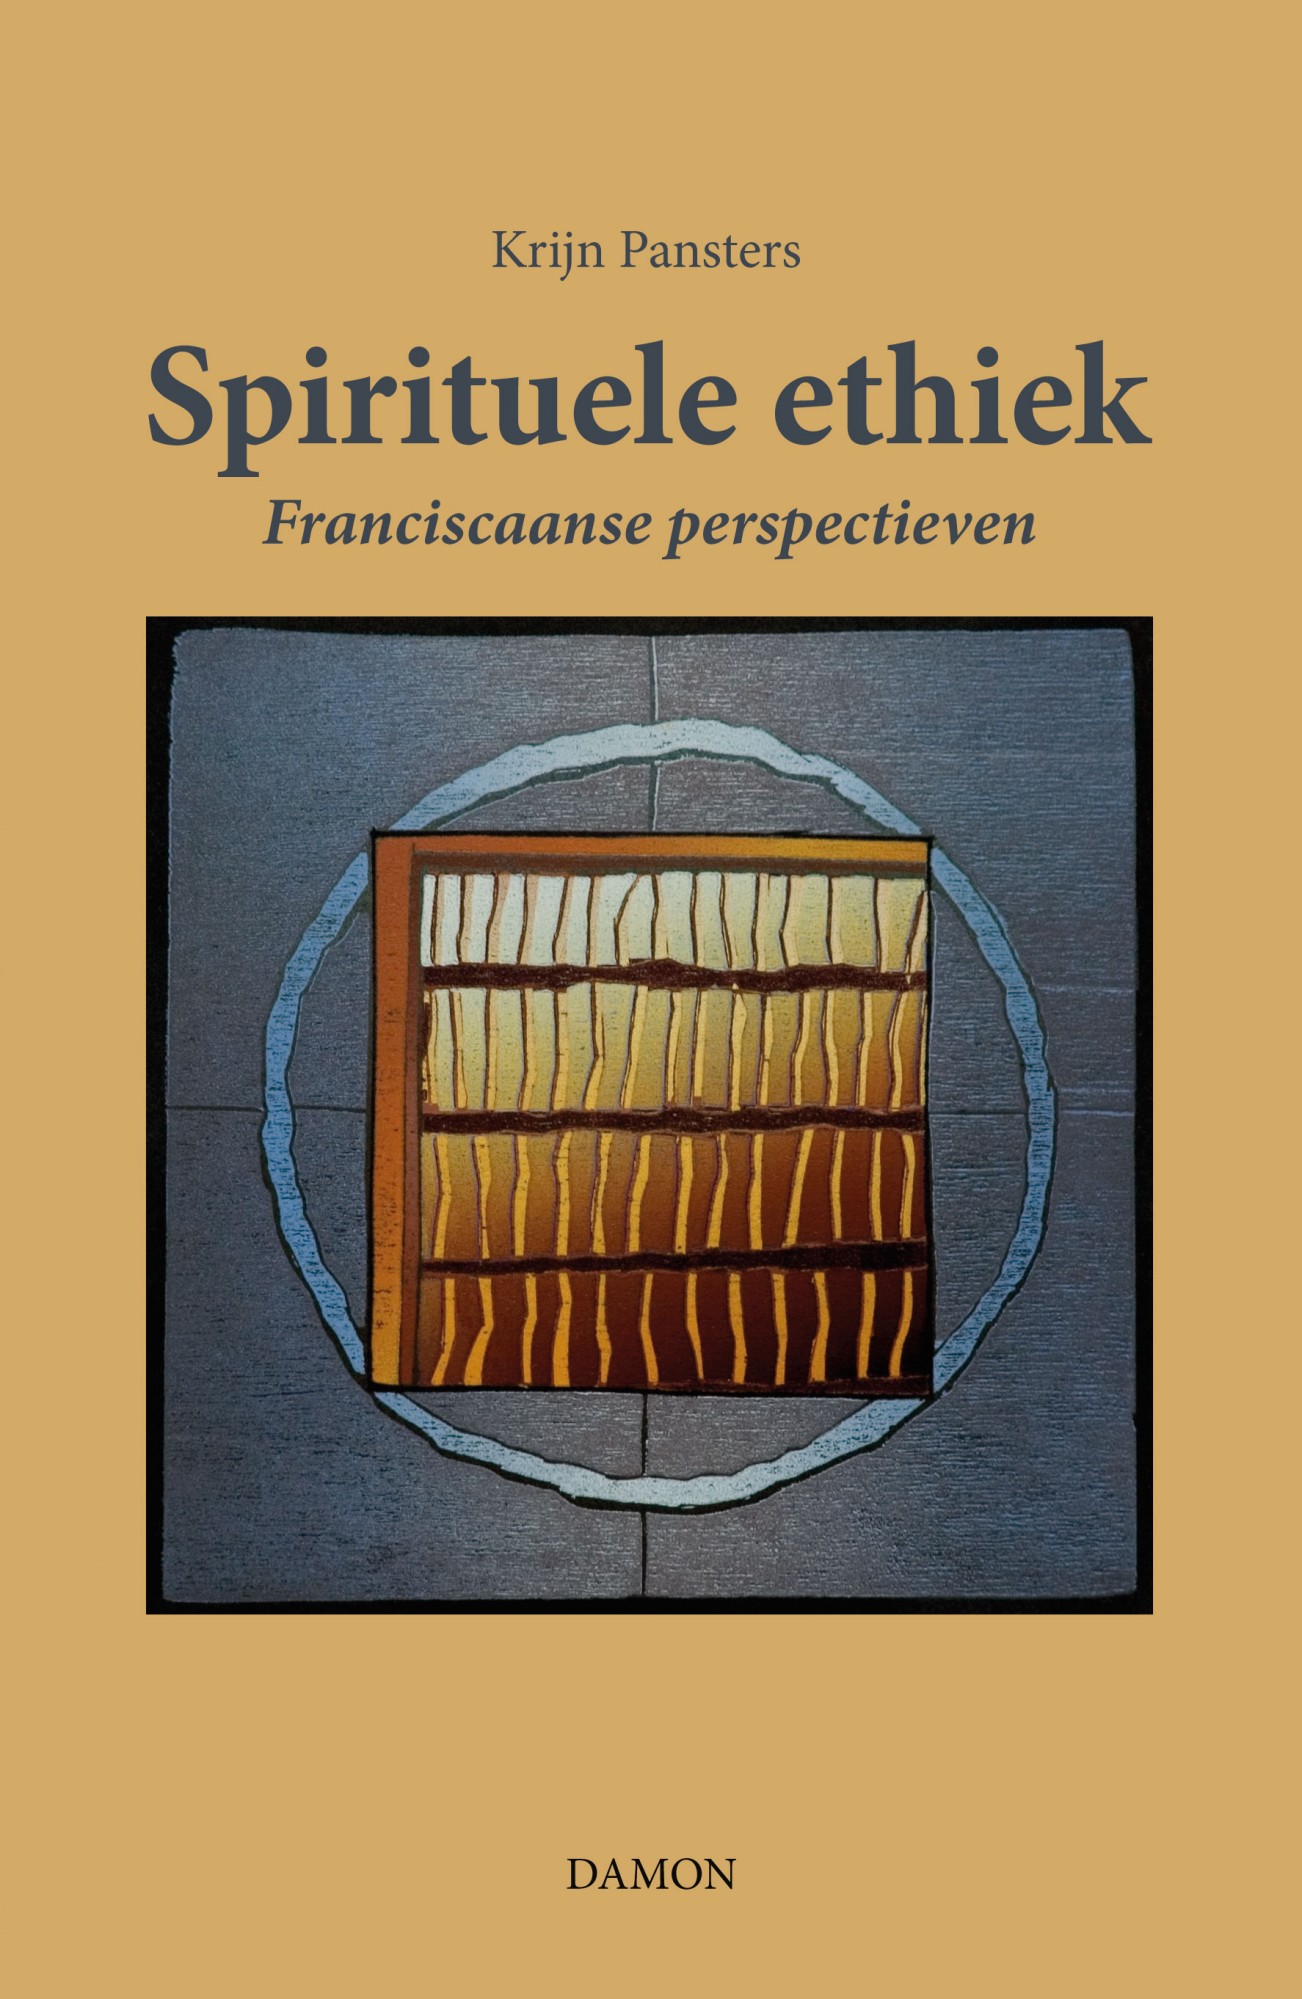 Spirituele ethiek